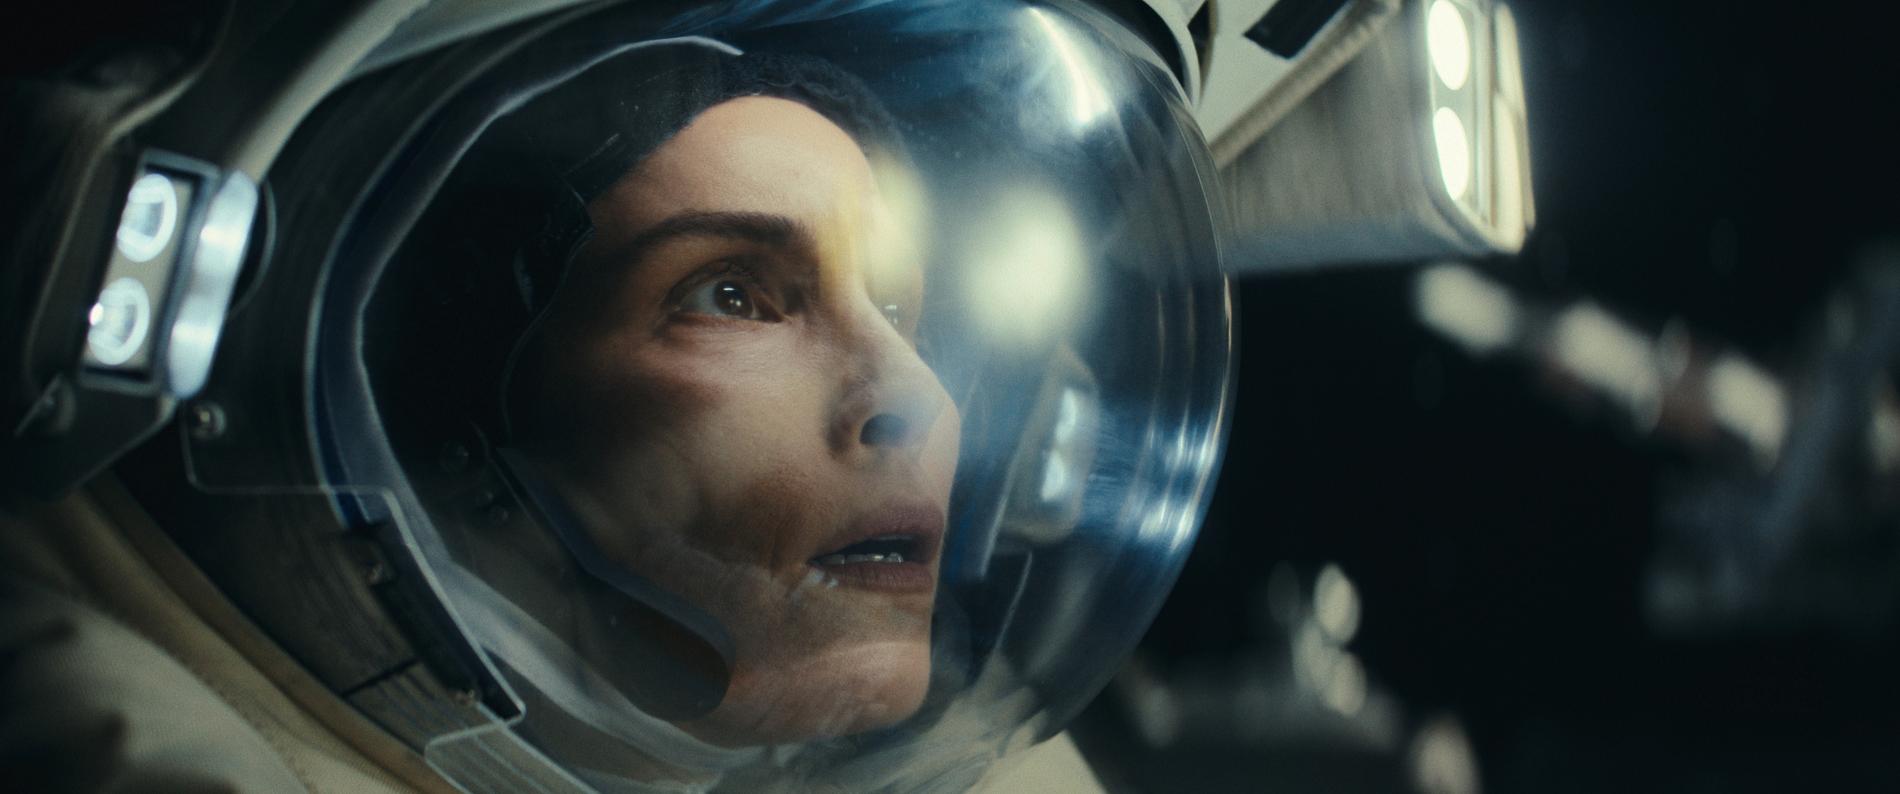 Den svenska astronauten Johanna (Noomi Rapace) blir kvar i rymden när en olycka inträffar ombord på den internationella rymdstationen. Pressbild.